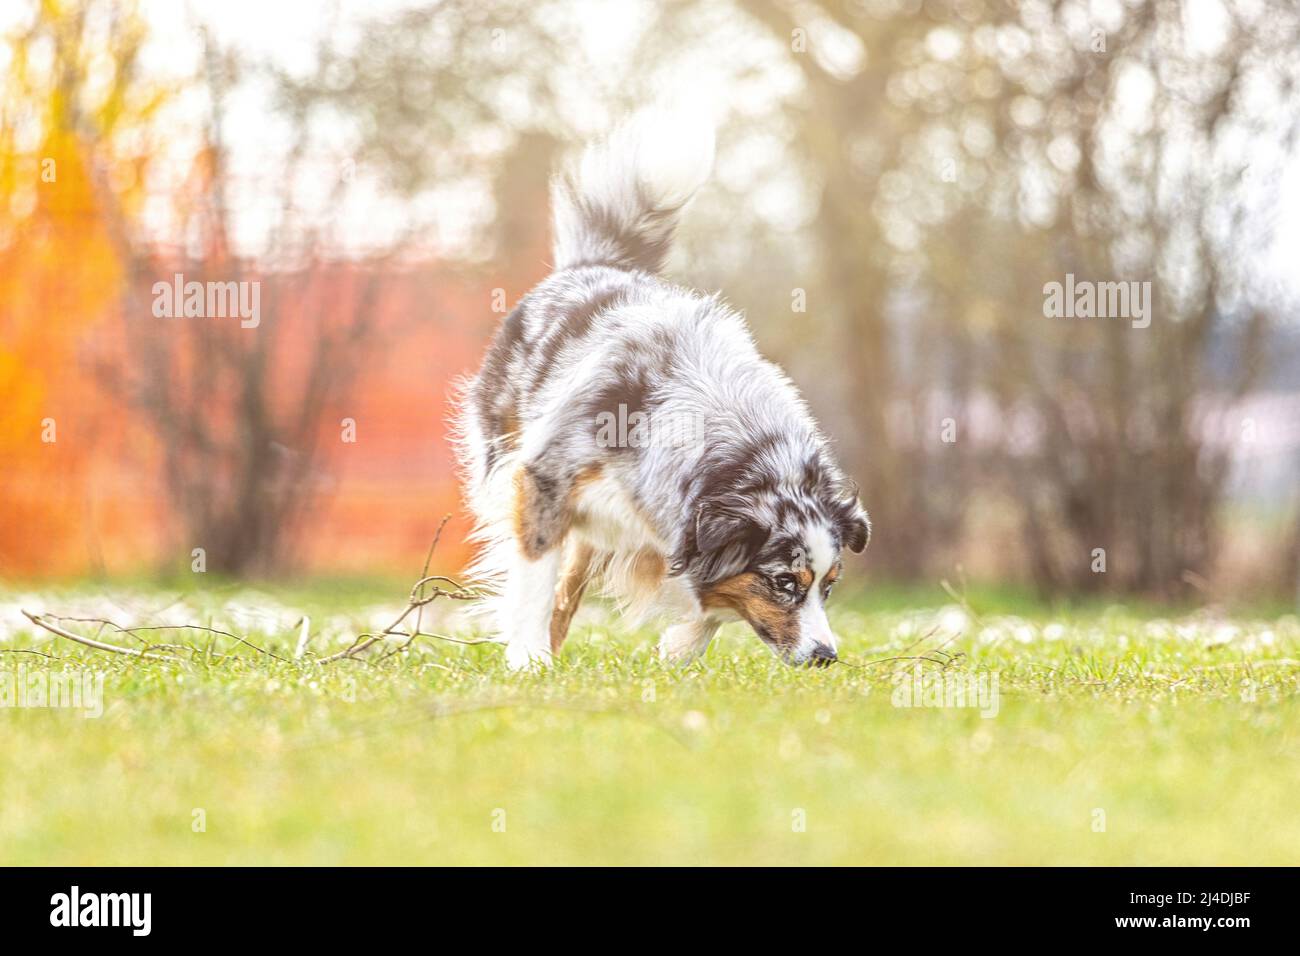 Porträt eines australischen Schäferhundes, der im Frühling im Freien auf einer Wiese am Boden schnüffelt Stockfoto